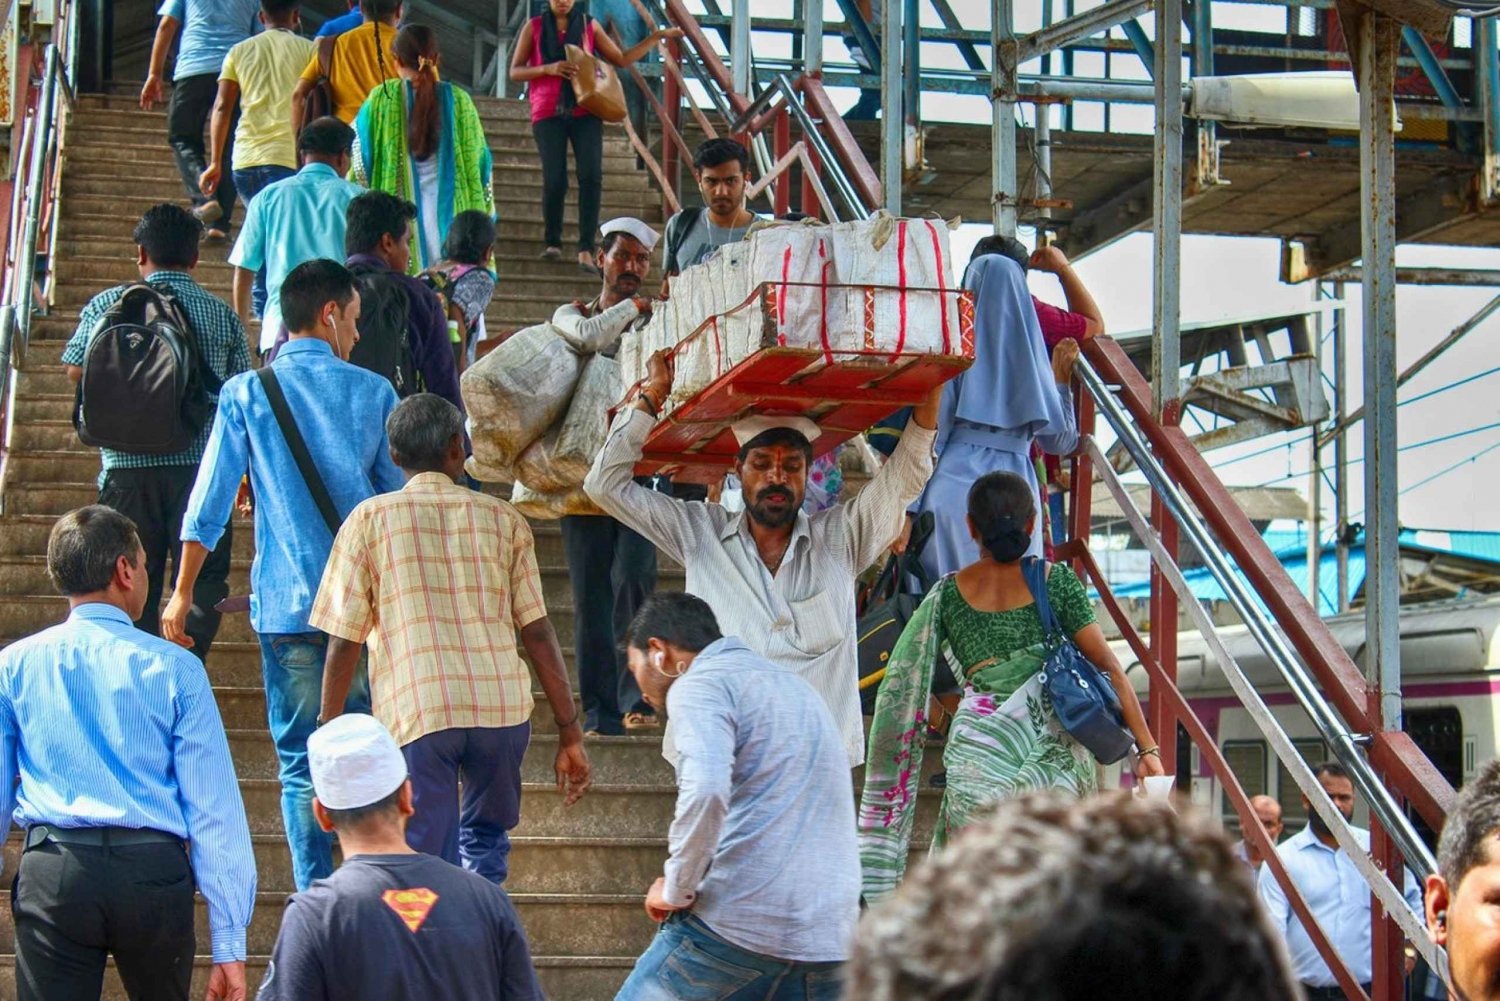 Mumbain rantaretket : Kulttuuri ja perintö opastettu kierros